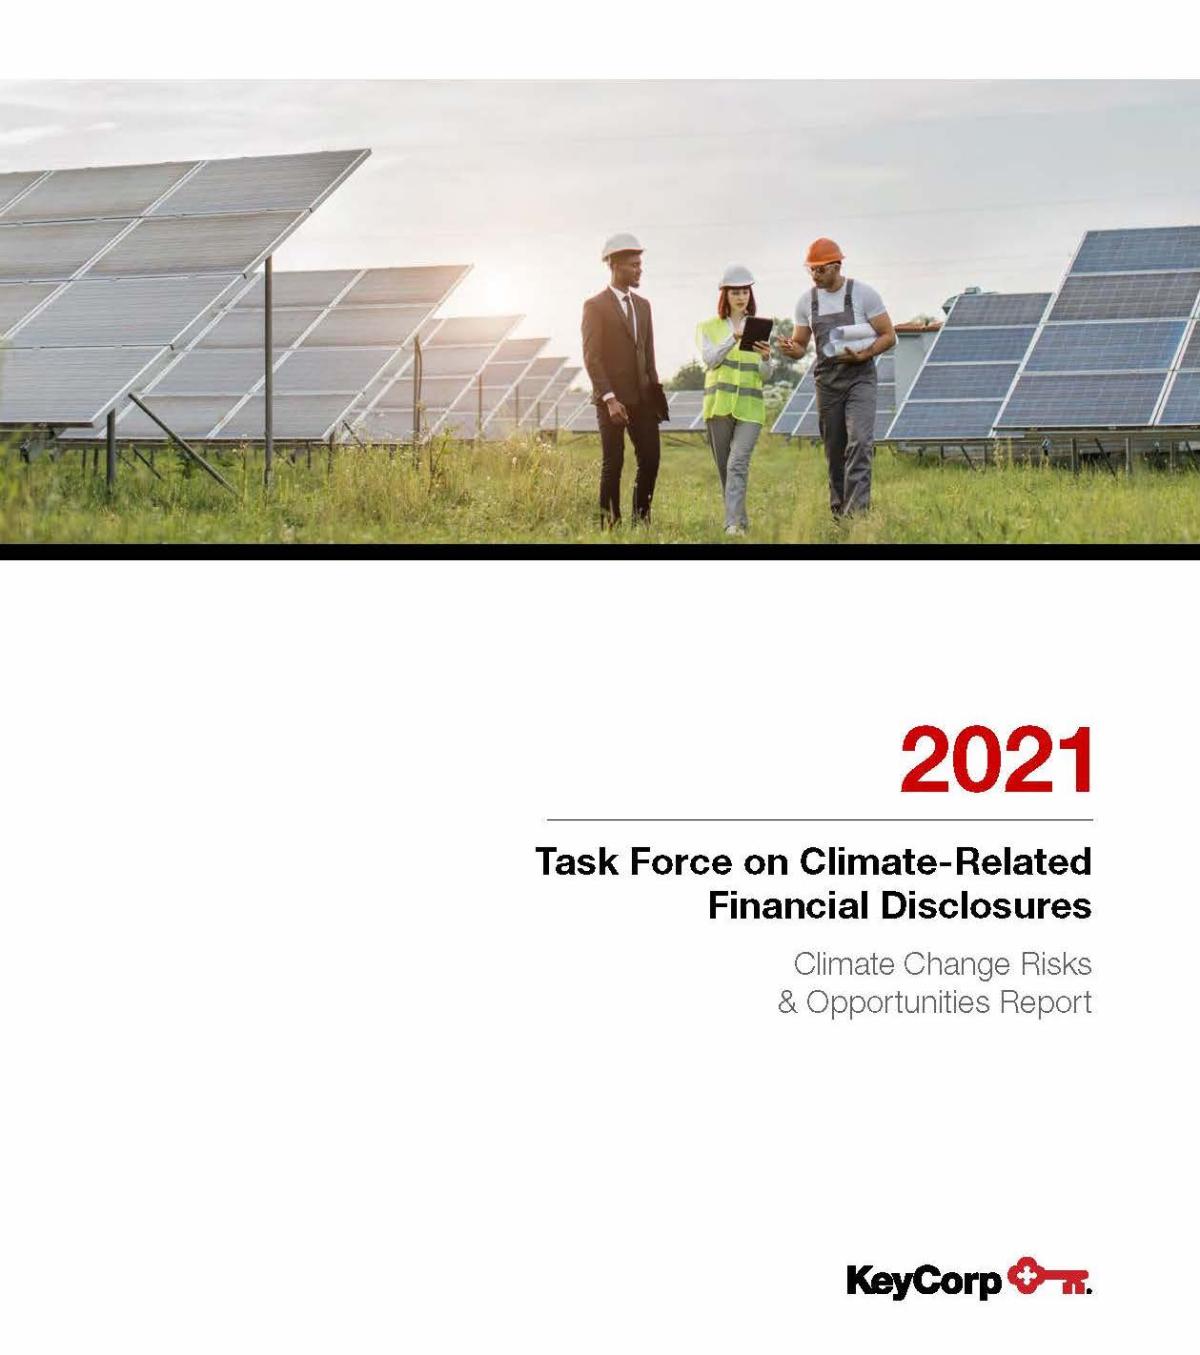 太阳板阵列显示三人2021气候相关金融披露工作队